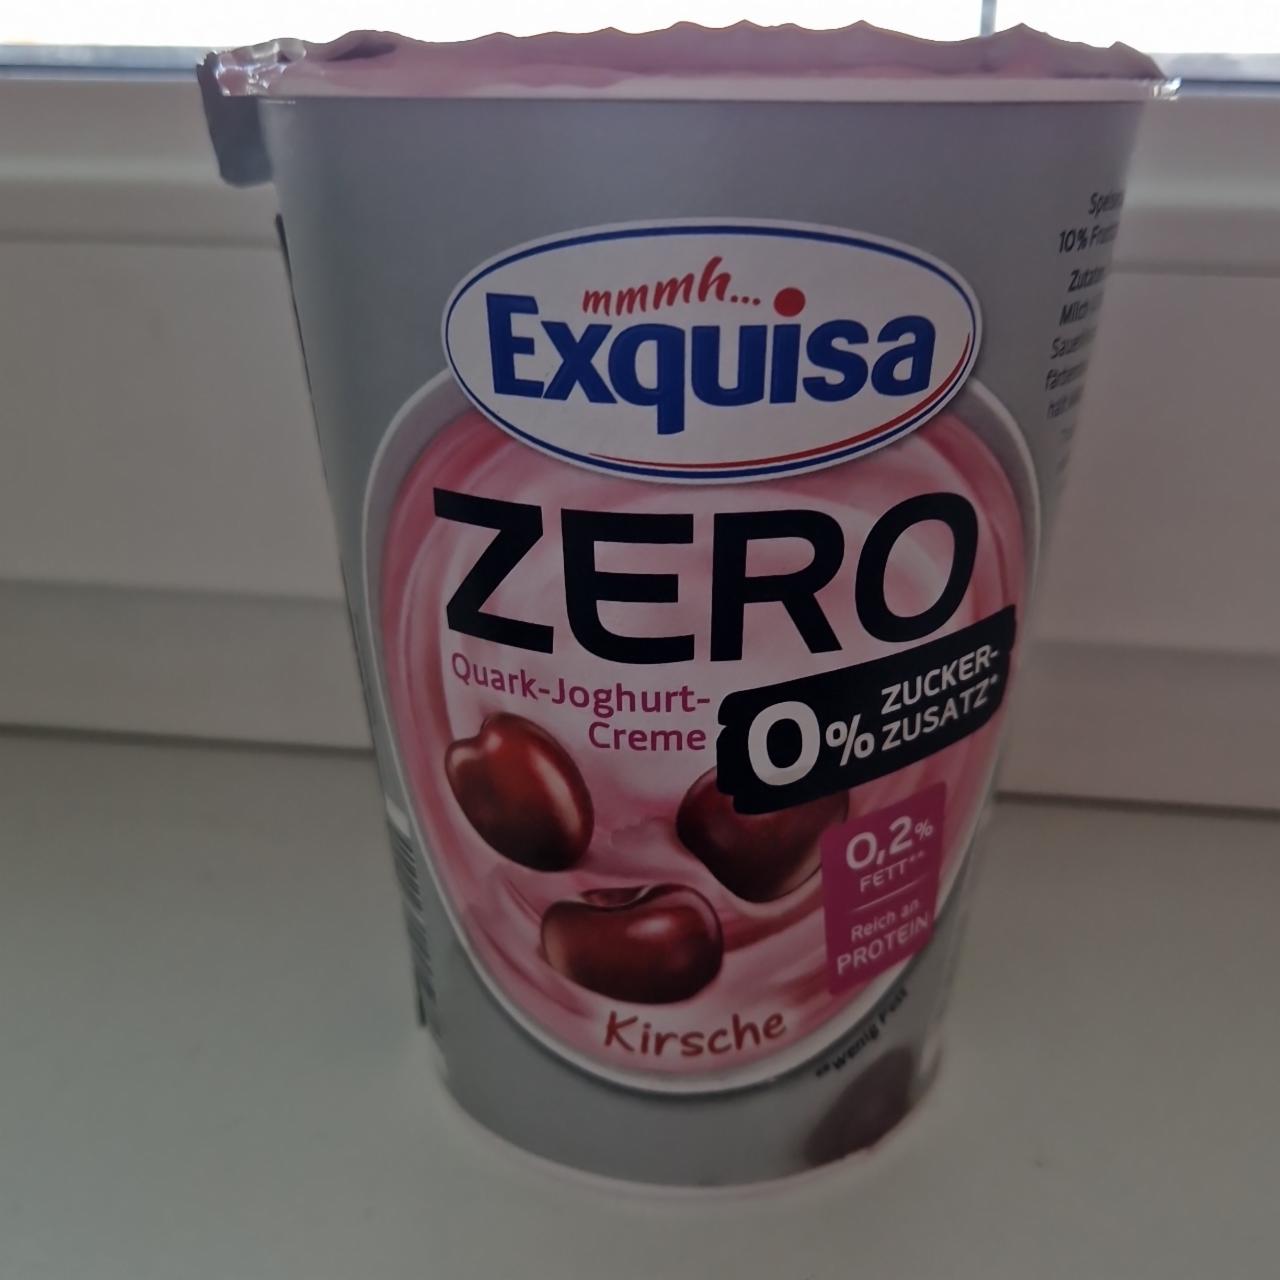 Fotografie - Zero Quark-Joghurt-Creme Kirsche Exquisa